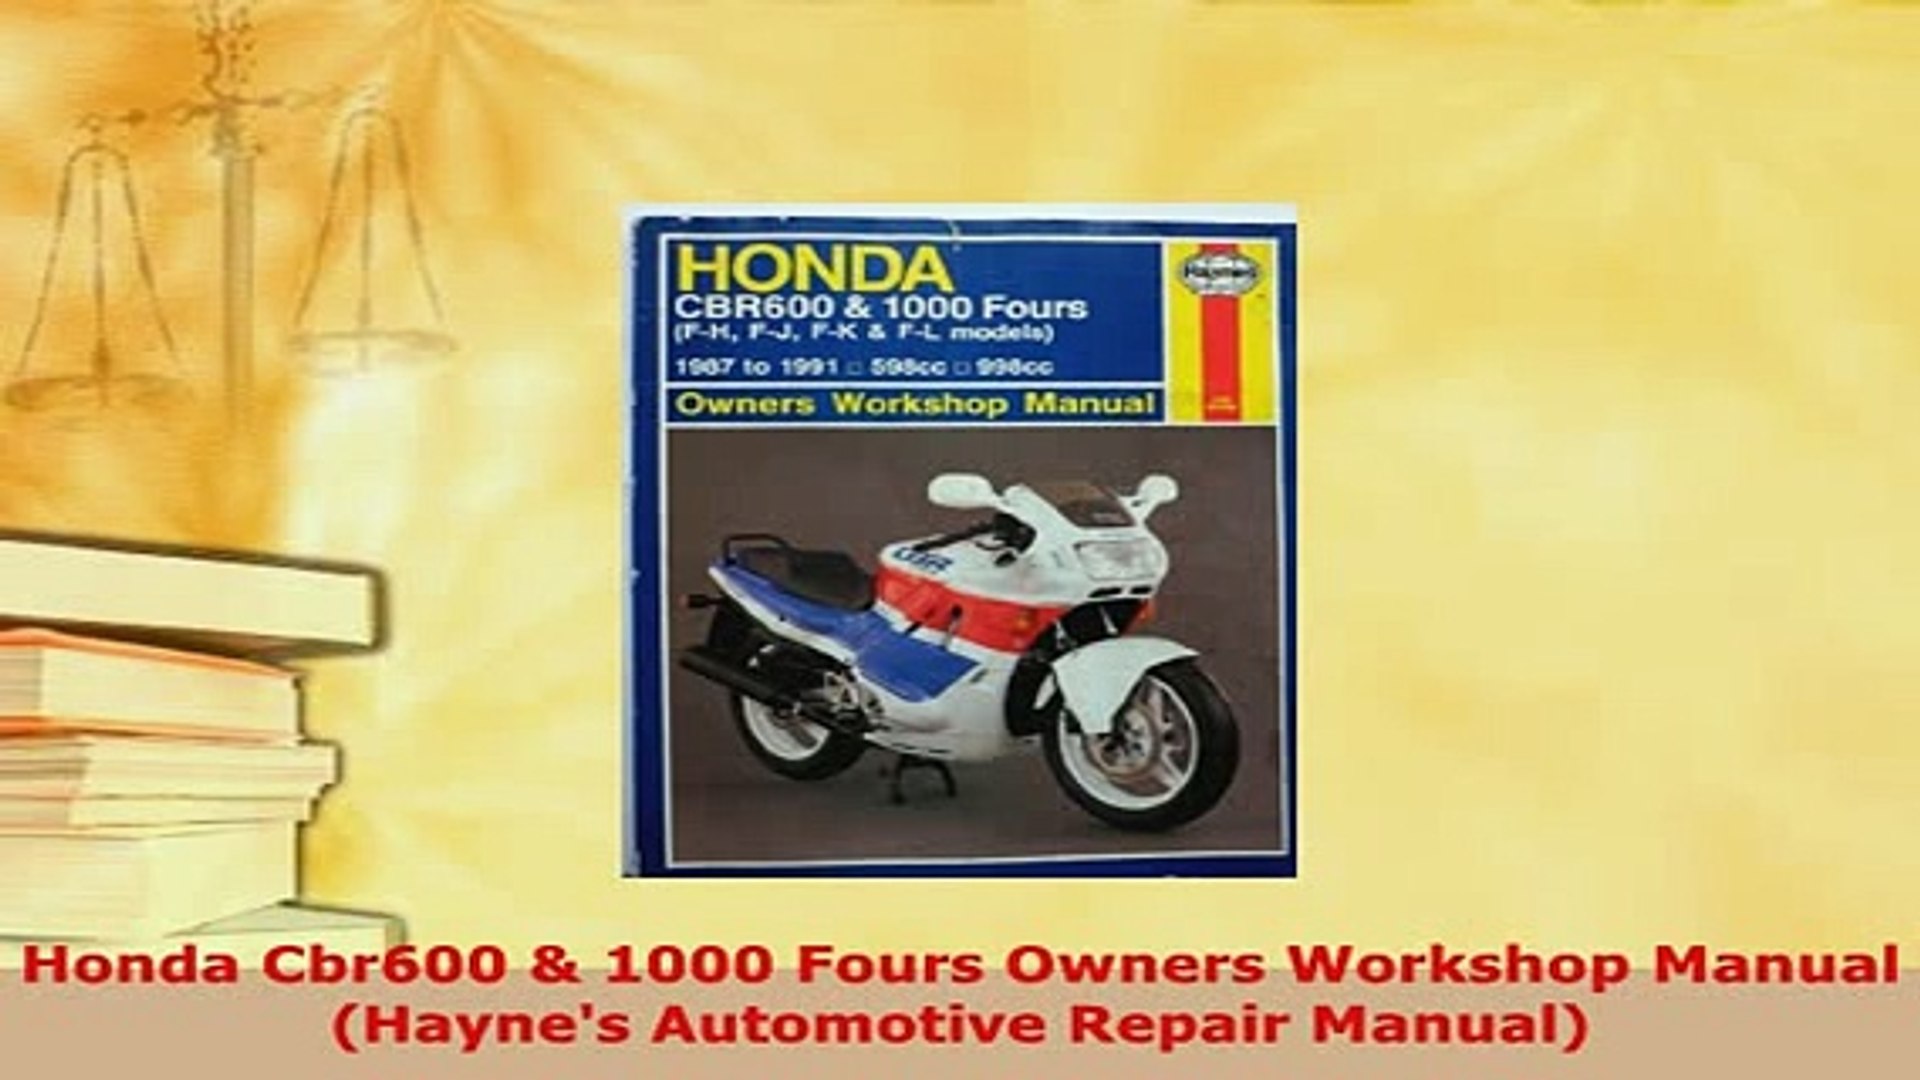 Service manual for honda mower